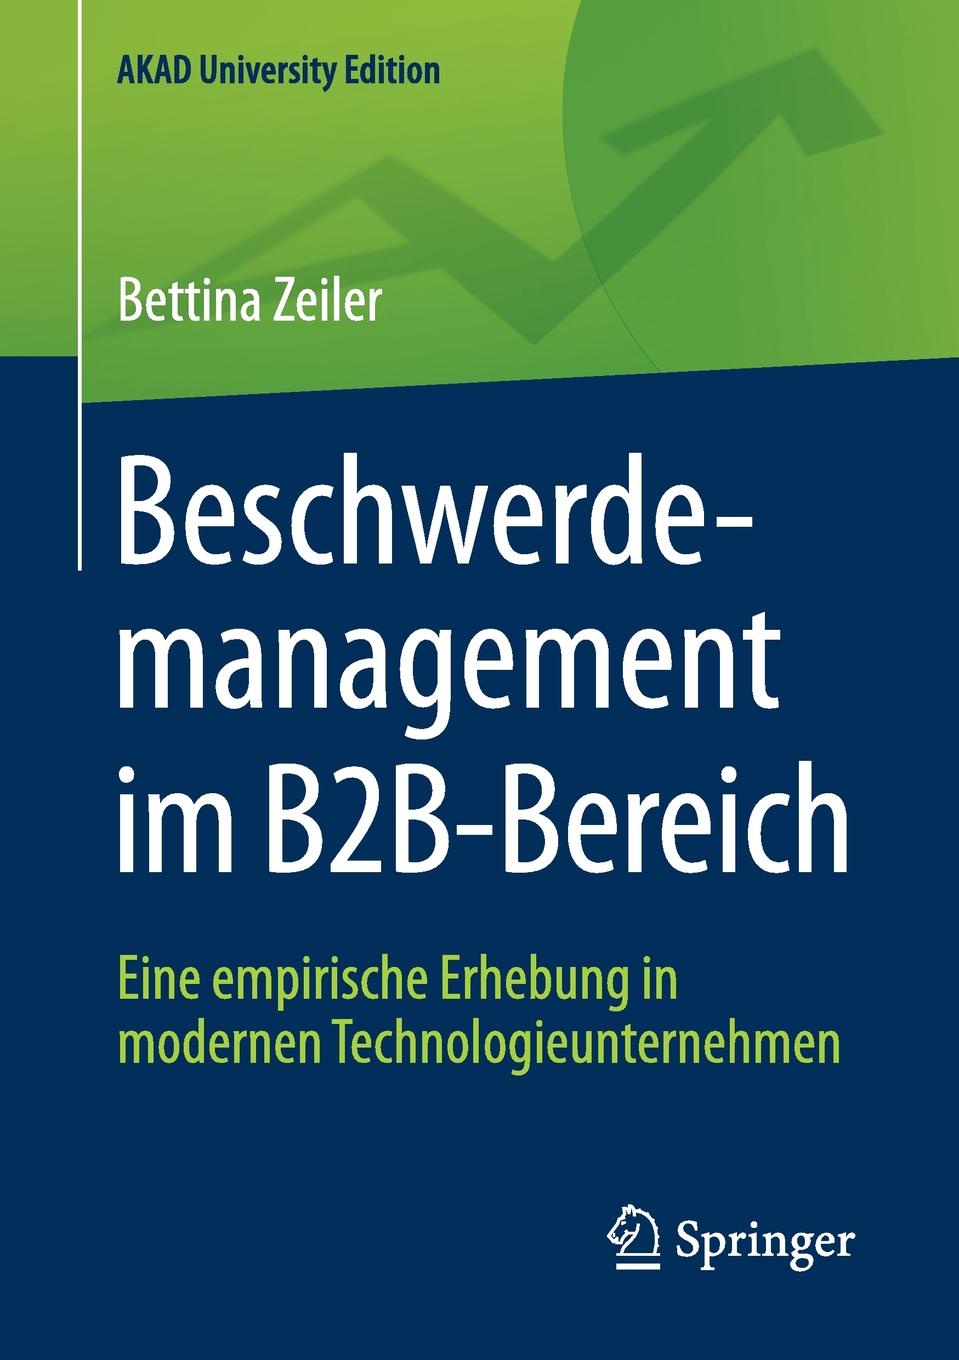 Beschwerdemanagement im B2B-Bereich. Eine empirische Erhebung in modernen Technologieunternehmen